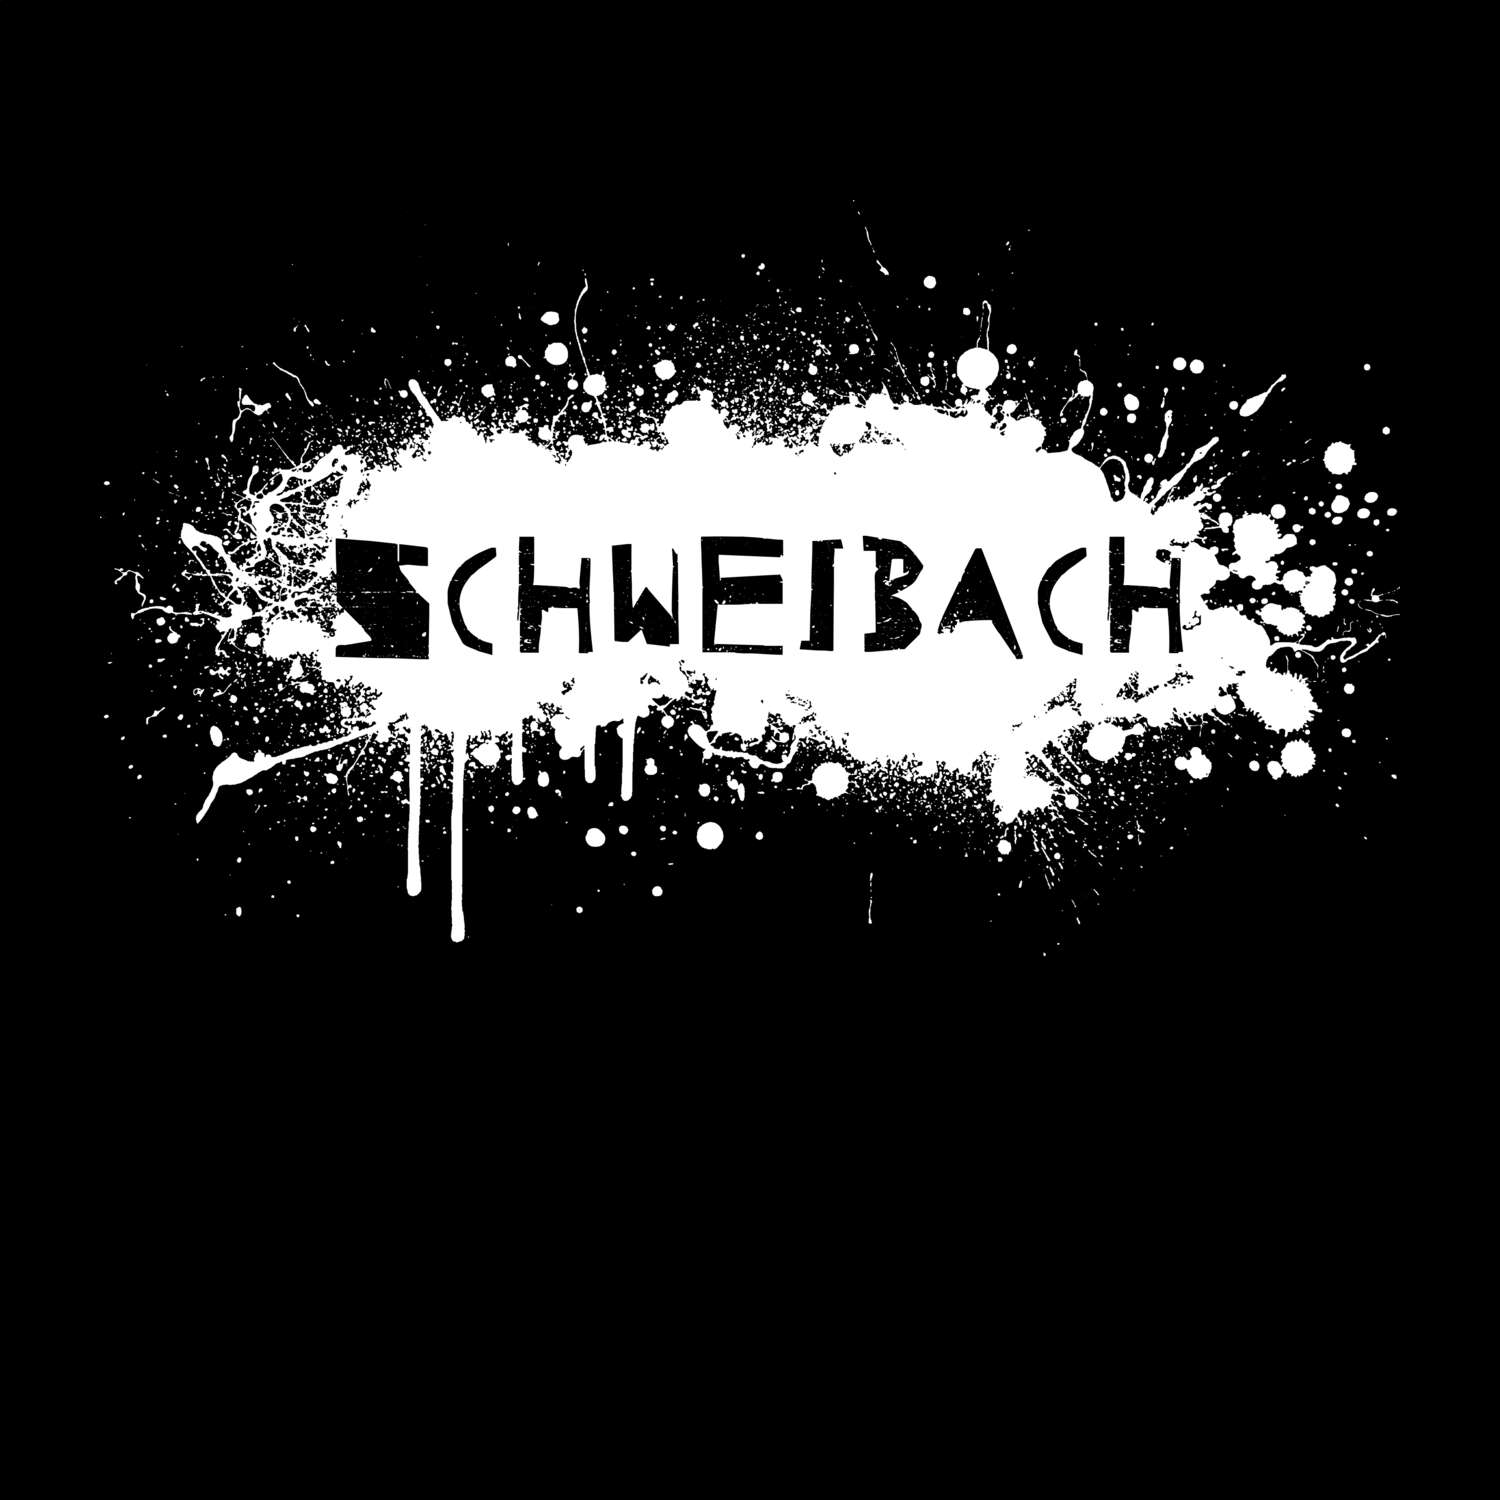 Schweibach T-Shirt »Paint Splash Punk«